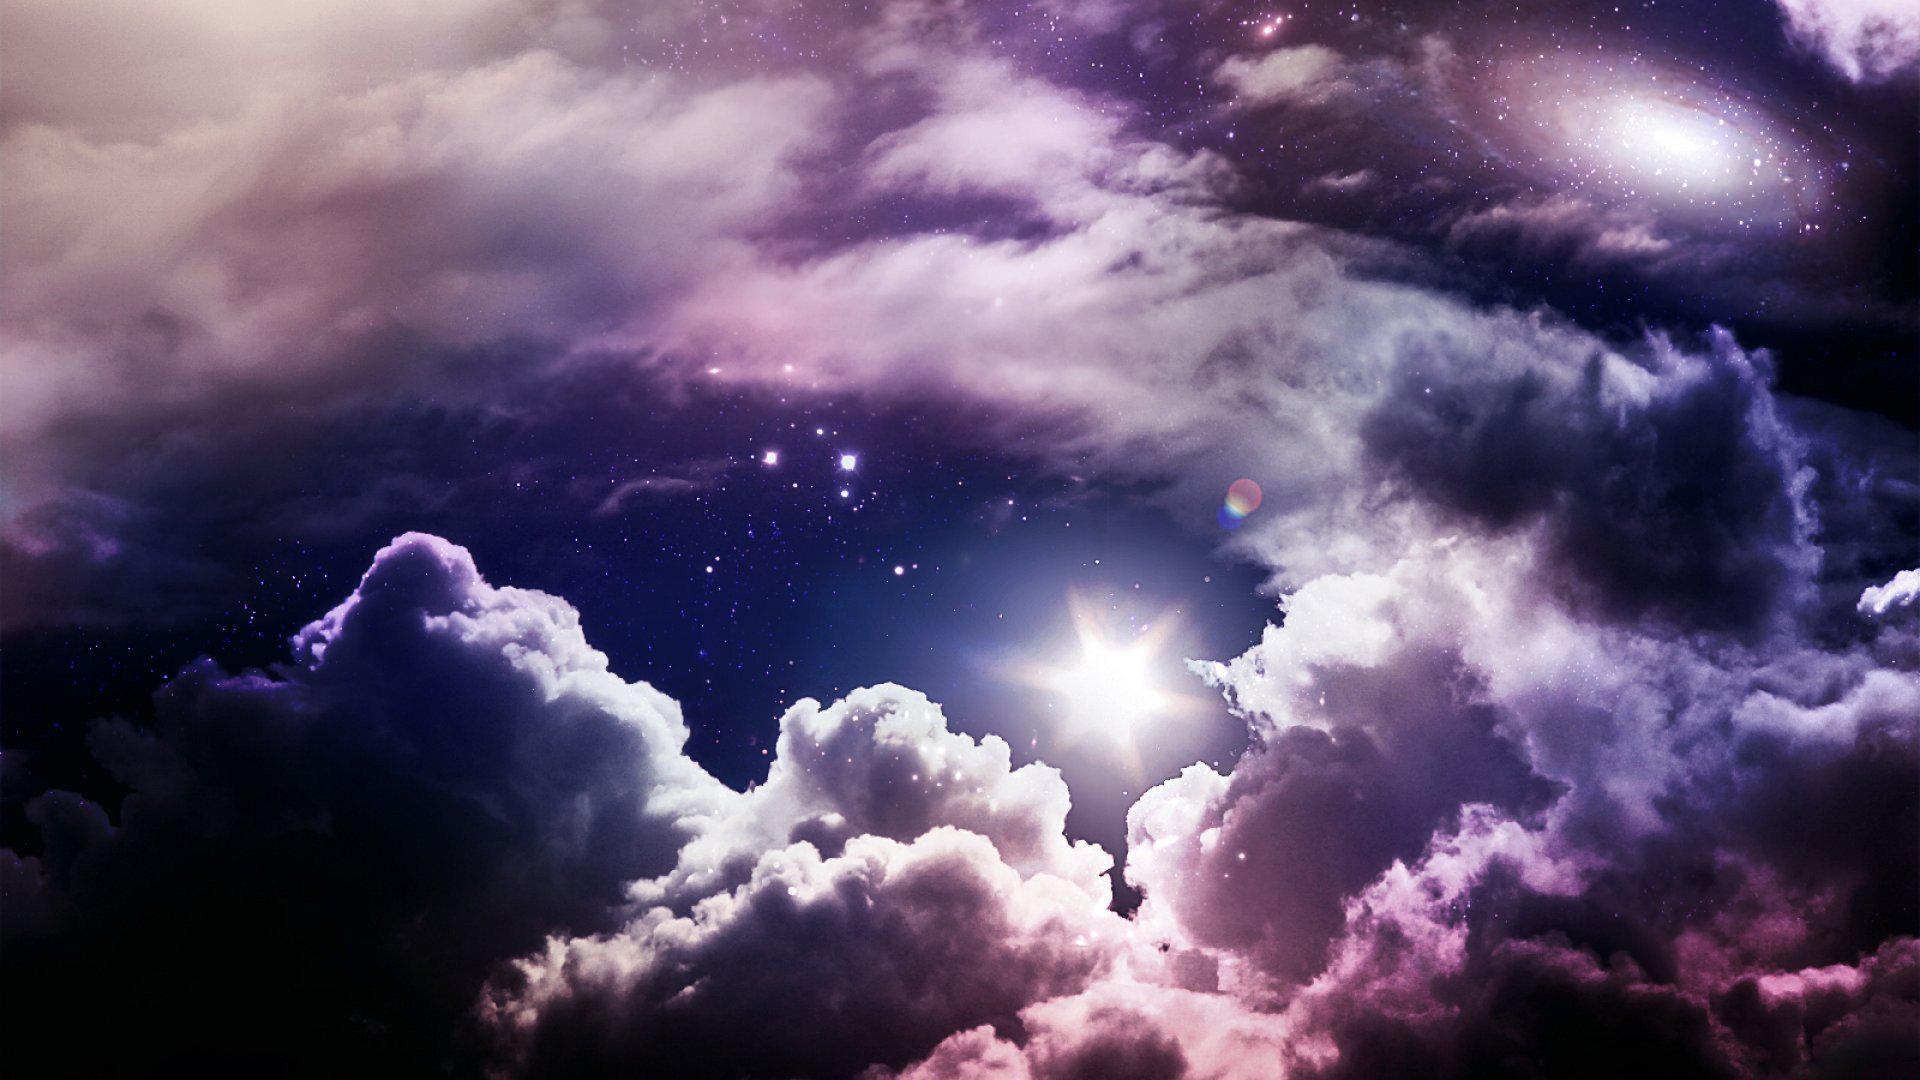 Скачать обои бесплатно Небо, Облака, Звездное Небо, Галактика, Пурпурный, Земля/природа картинка на рабочий стол ПК